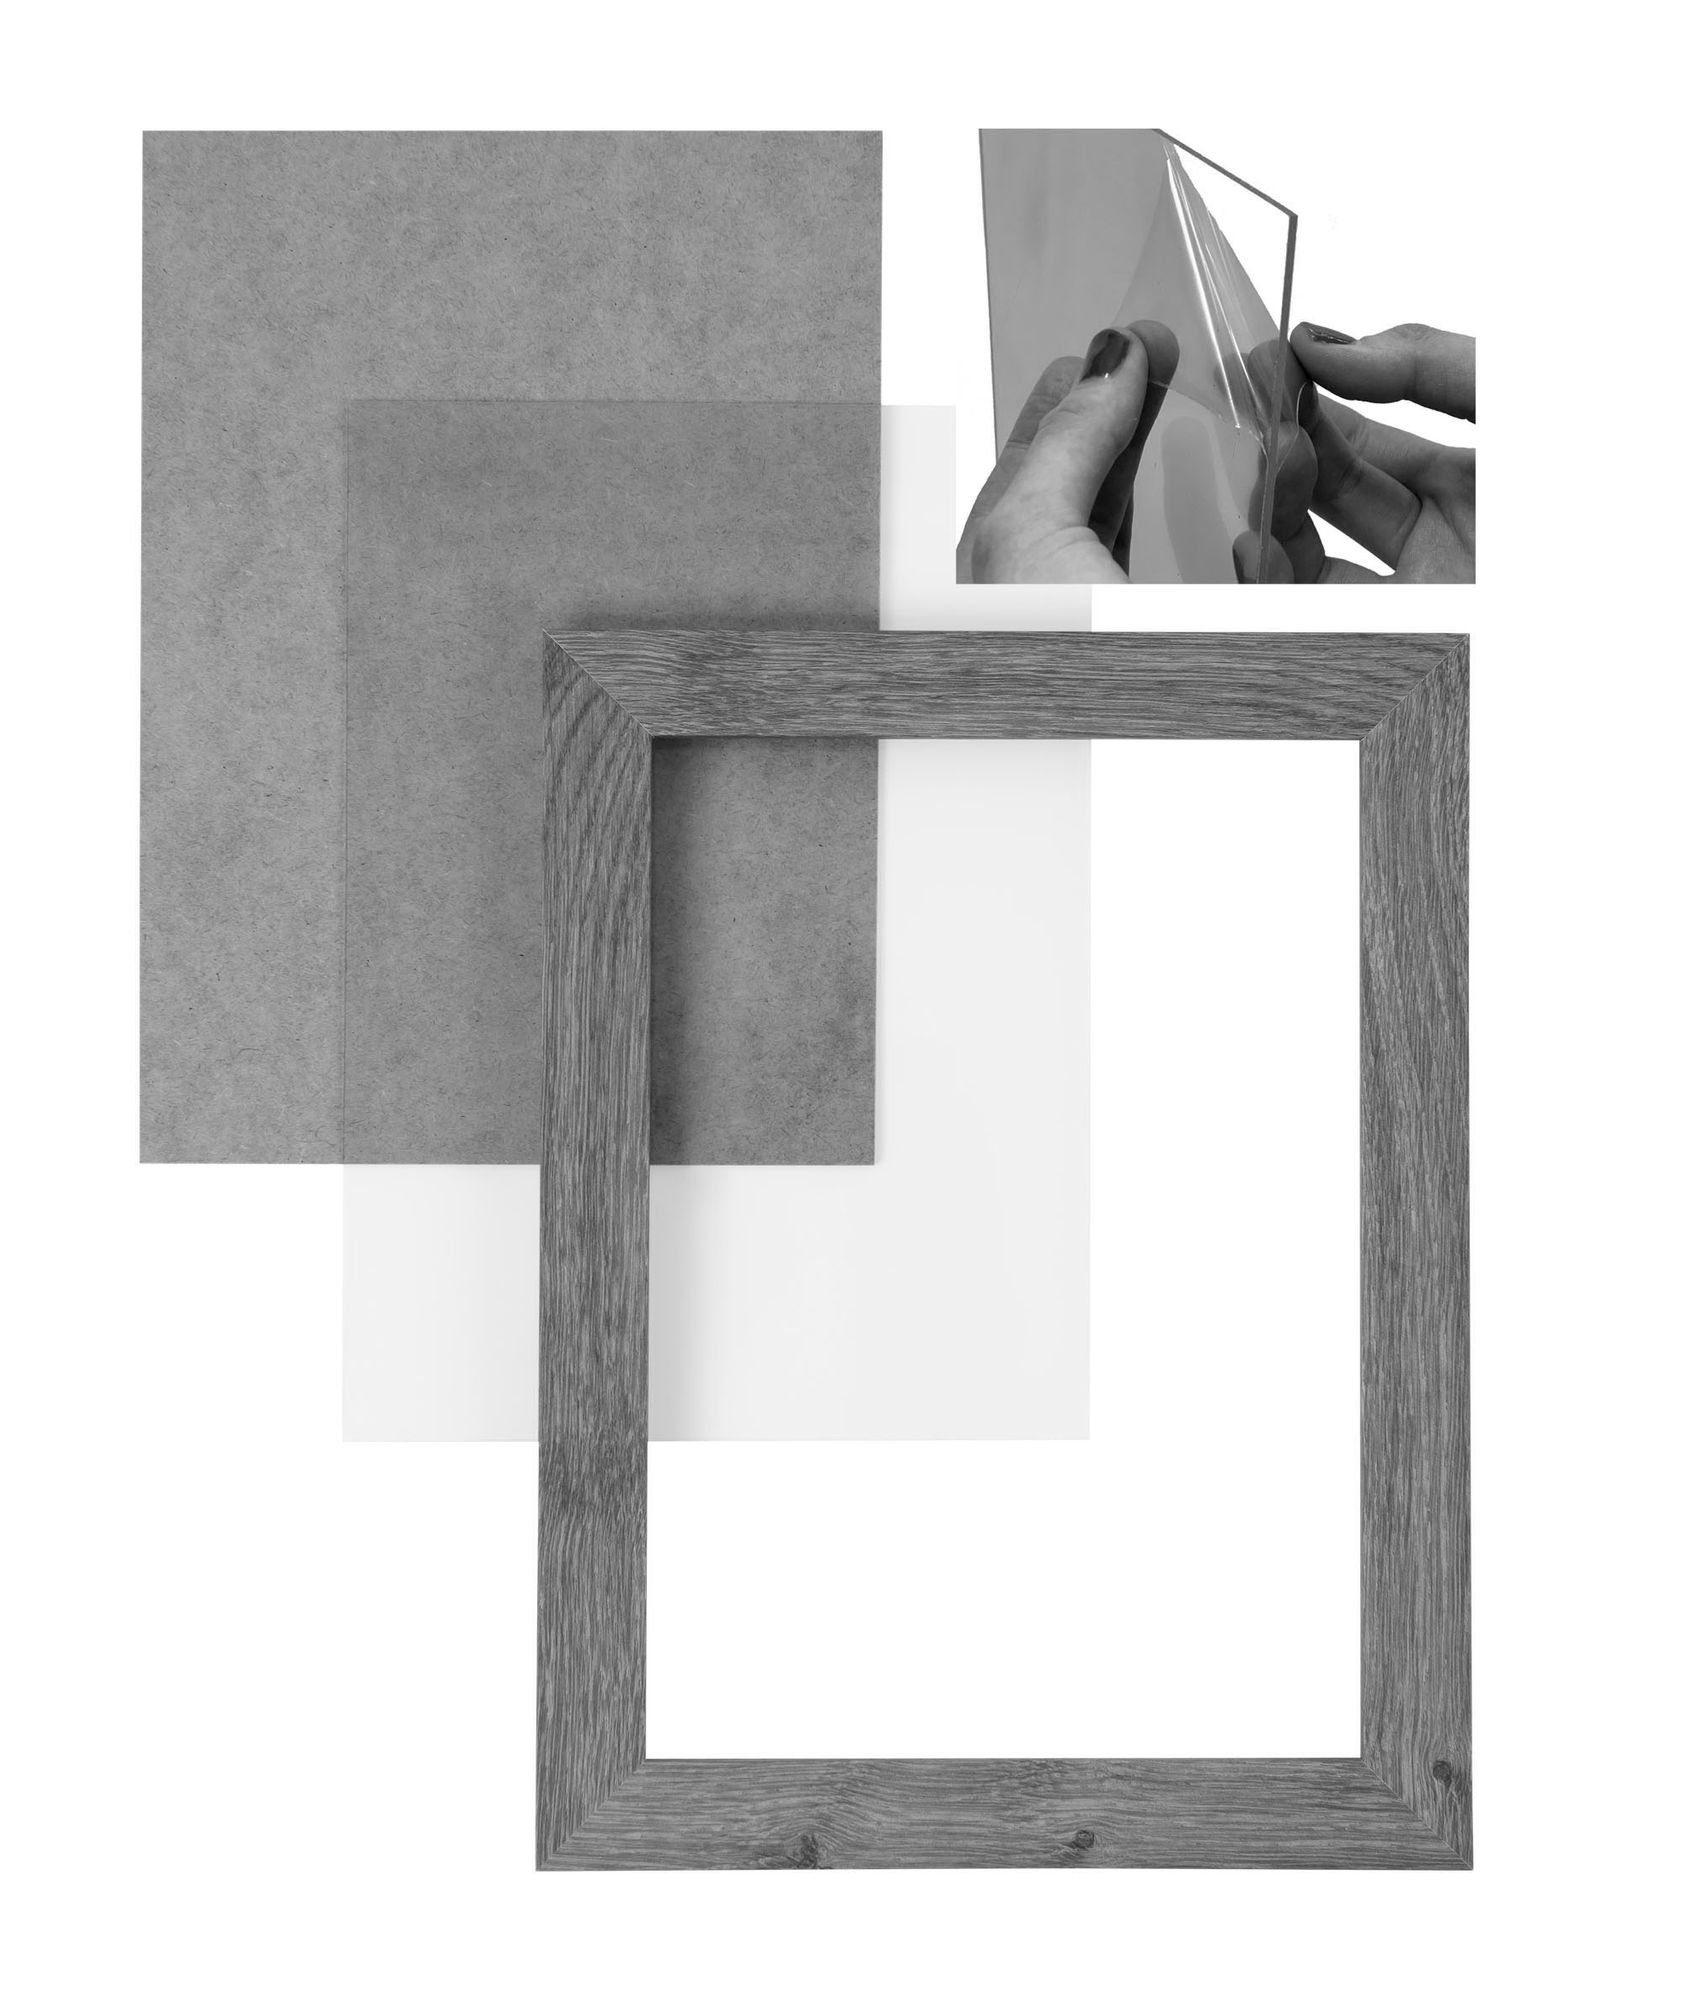 Maß und Bilderrahmen CLAMARO Aufhänger in Bilderrahmen Rückwand MDF silber FSC® Moderner 'Collage' inkl. Rahmen nach 27x40 gebürstet Holz Acrylglas, eckiger Clamaro handgefertigt